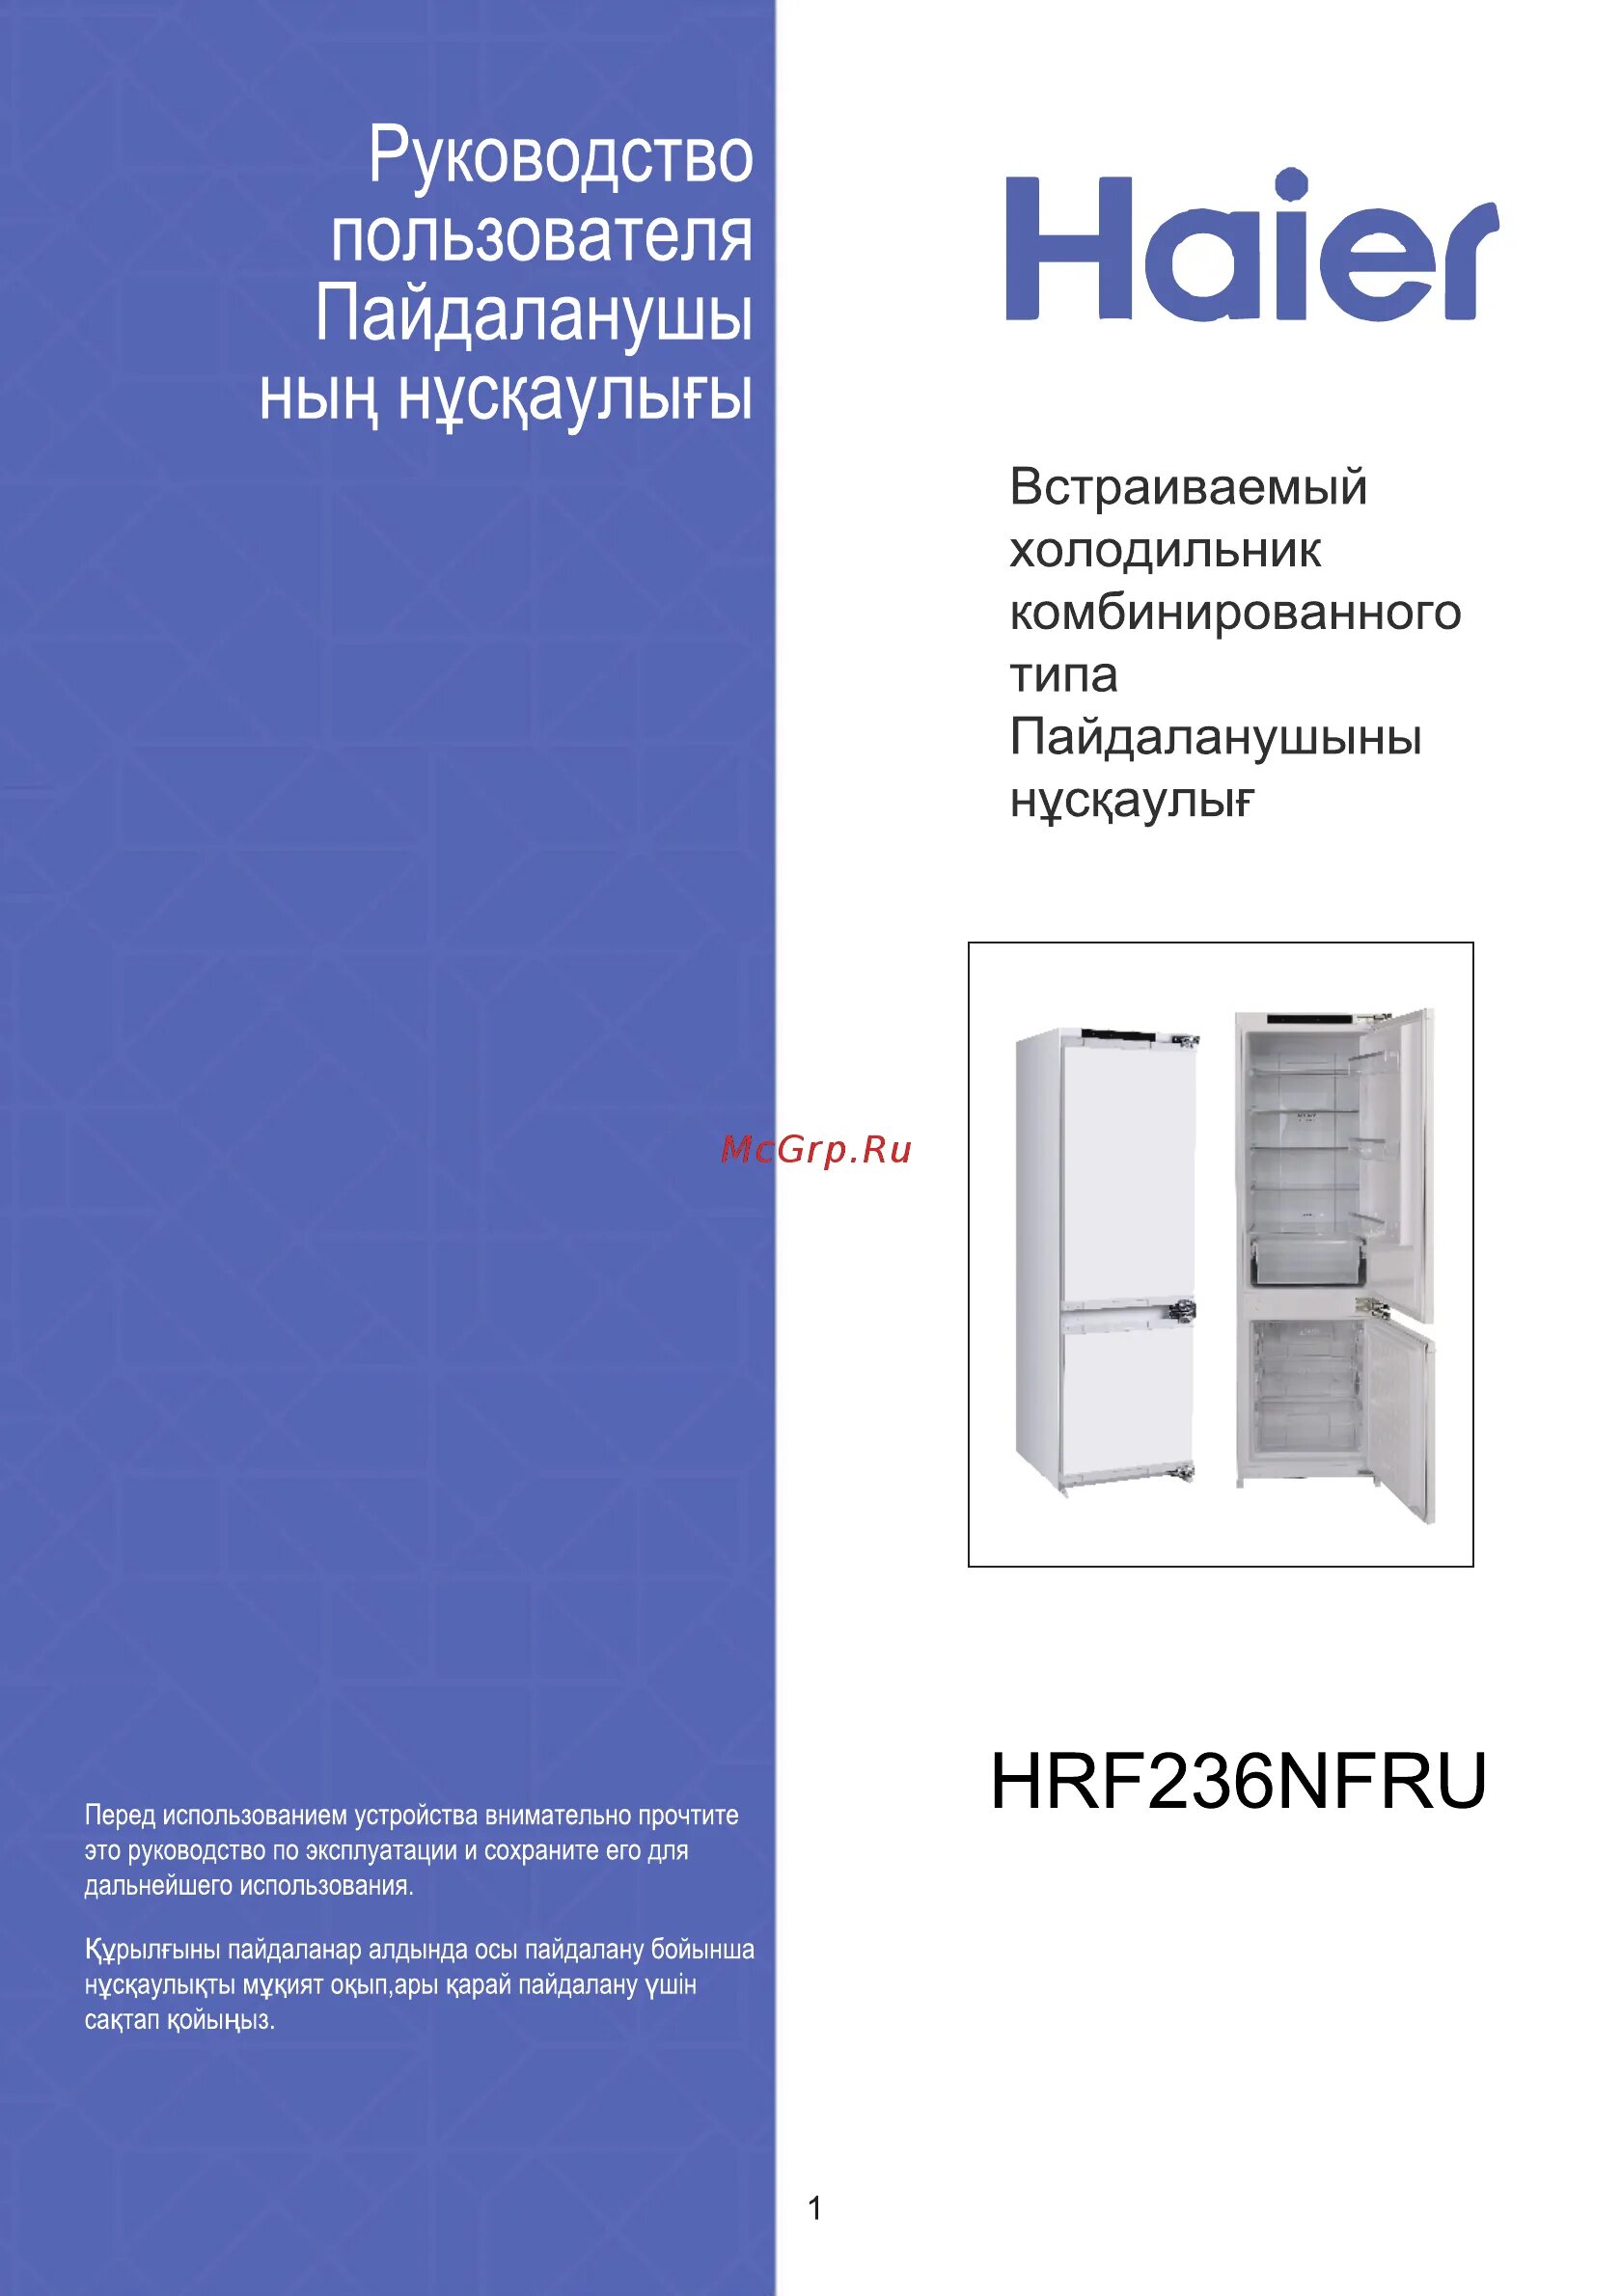 Холодильник встроенный Haier hrf236nfru. Встраиваемый холодильник Комби Haier hrf236nfru. Встраиваемый холодильник Комби Haier hrf236nfru схема встраивания. Haier bcft629twru